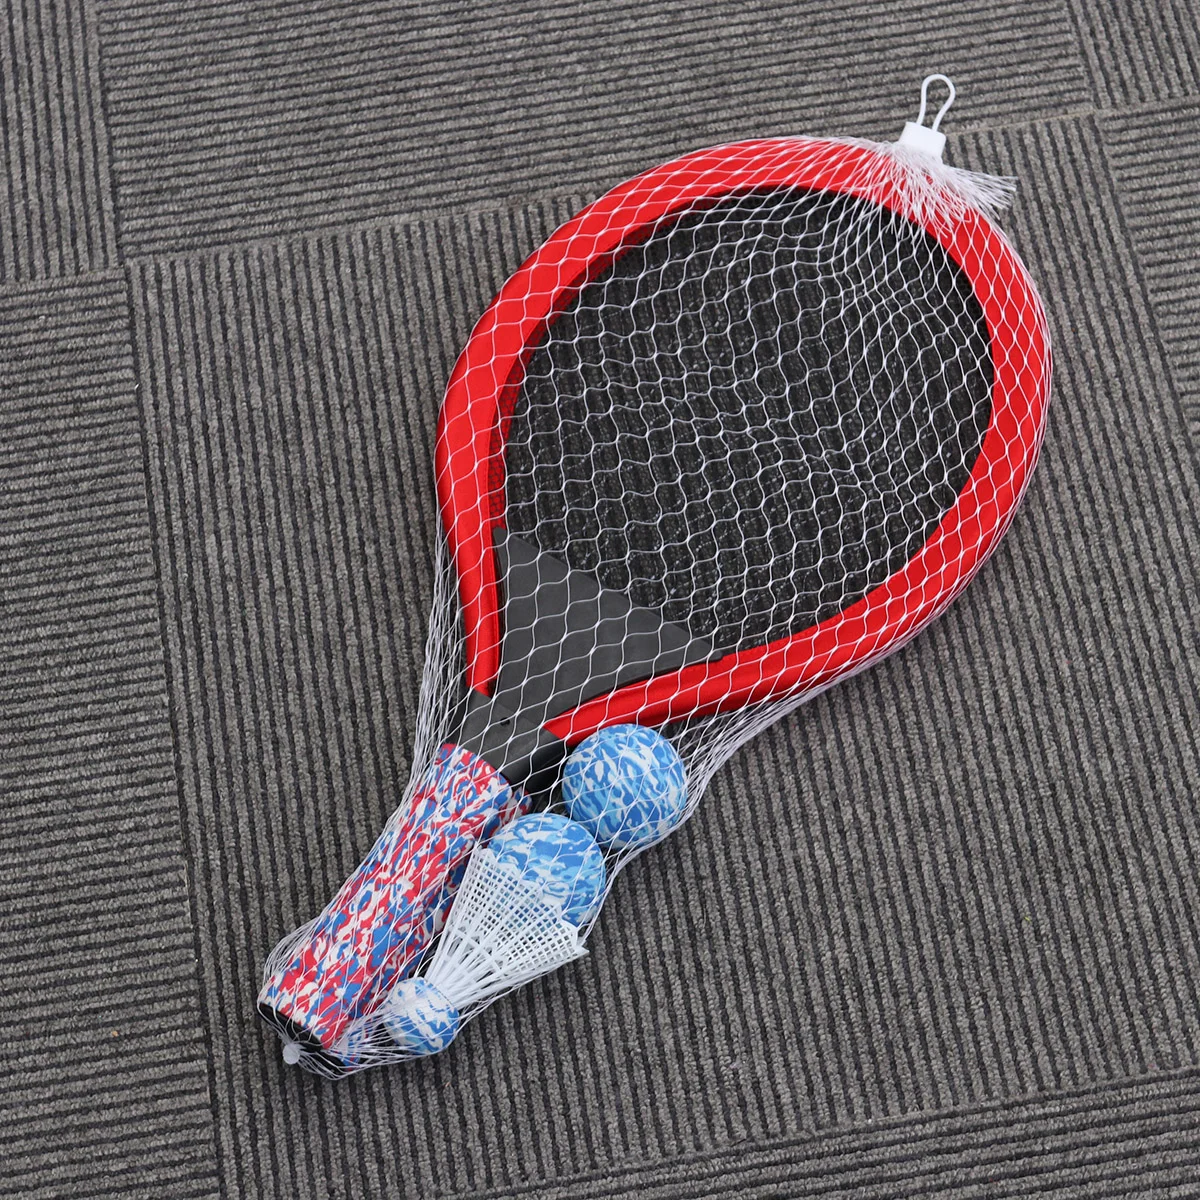 

Ракетка для тенниса, ракетка для активного отдыха, теннисная ракетка, практичные принадлежности, воланы, ракетка для детей, мальчиков (красная)